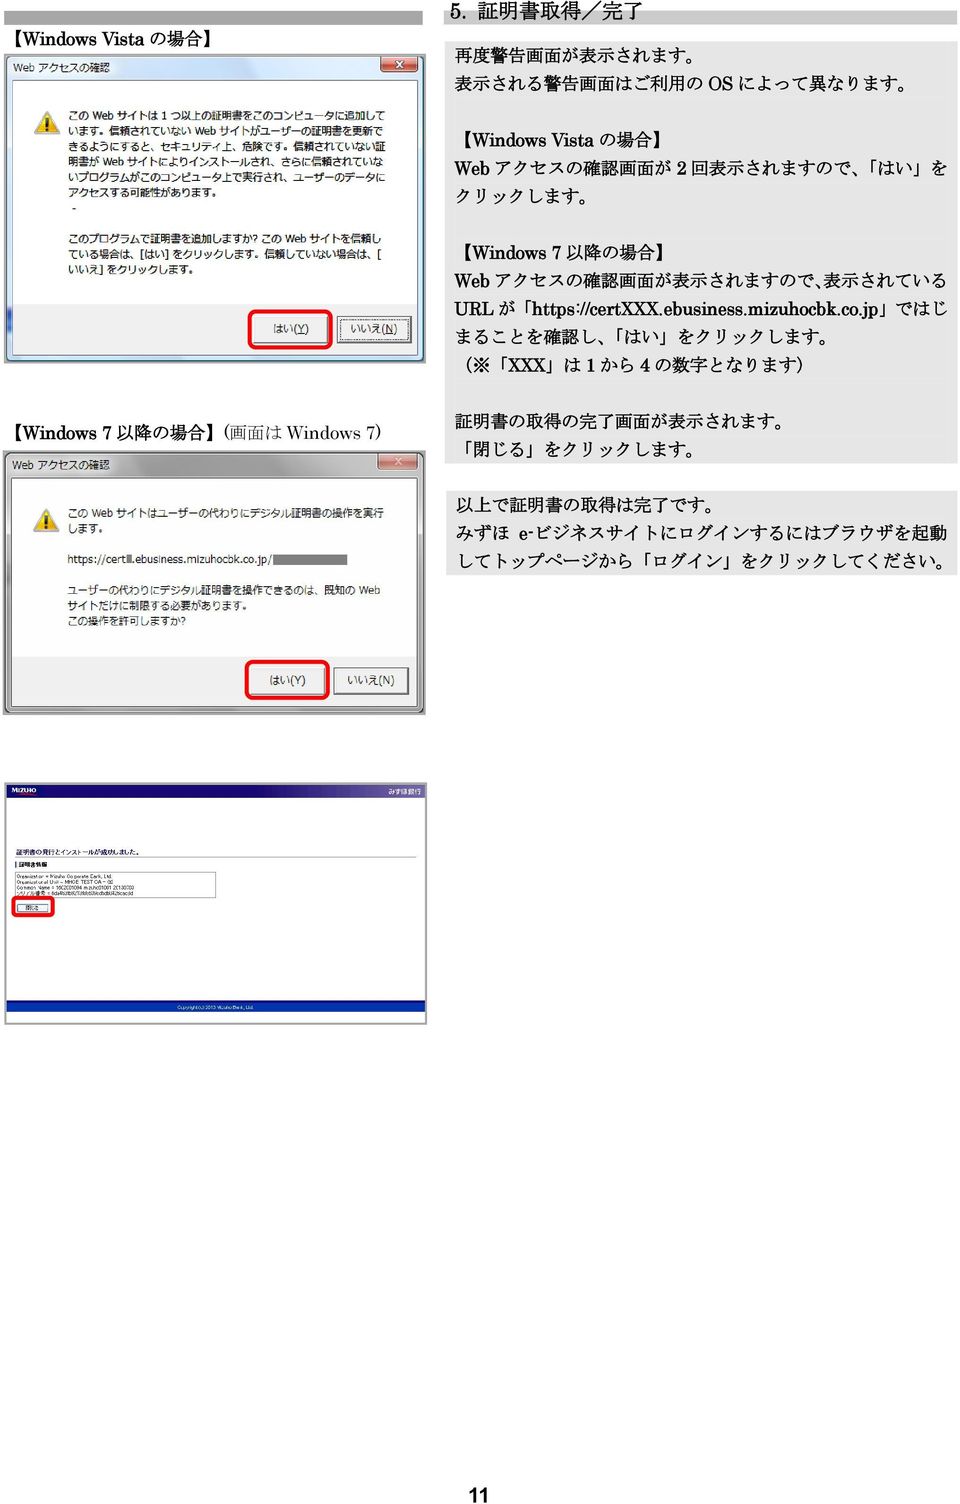 co.jp ではじ まることを 確 認 し はい をクリックします ( XXX は 1 から 4 の 数 字 となります) Windows 7 以 降 の 場 合 ( 画 面 は Windows 7) 証 明 書 の 取 得 の 完